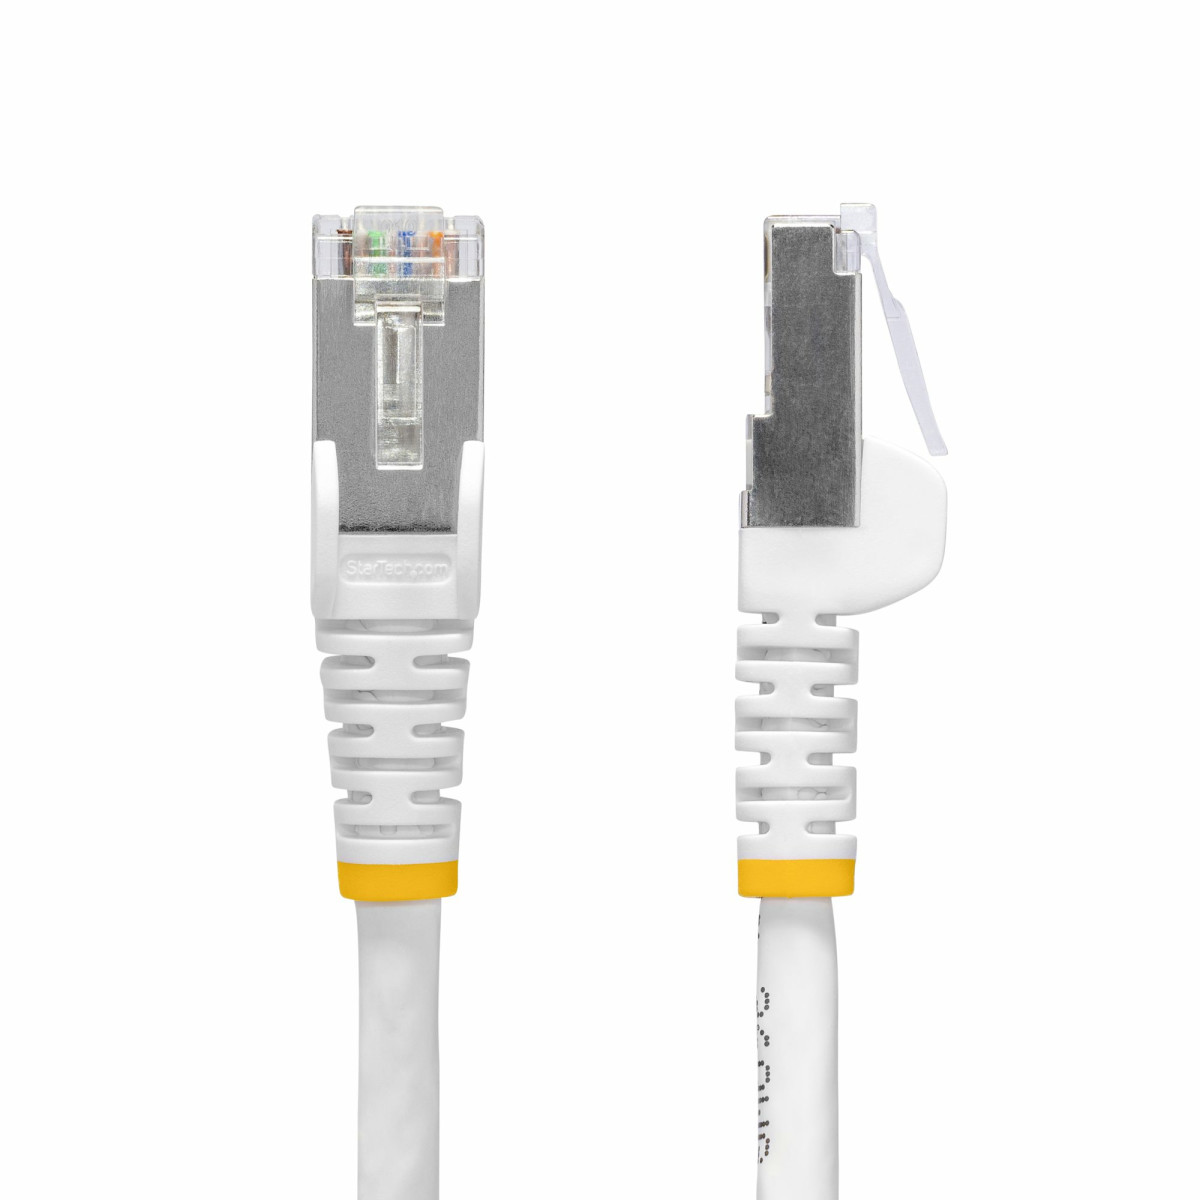 15m White CAT8 Ethernet Cable - LSZH